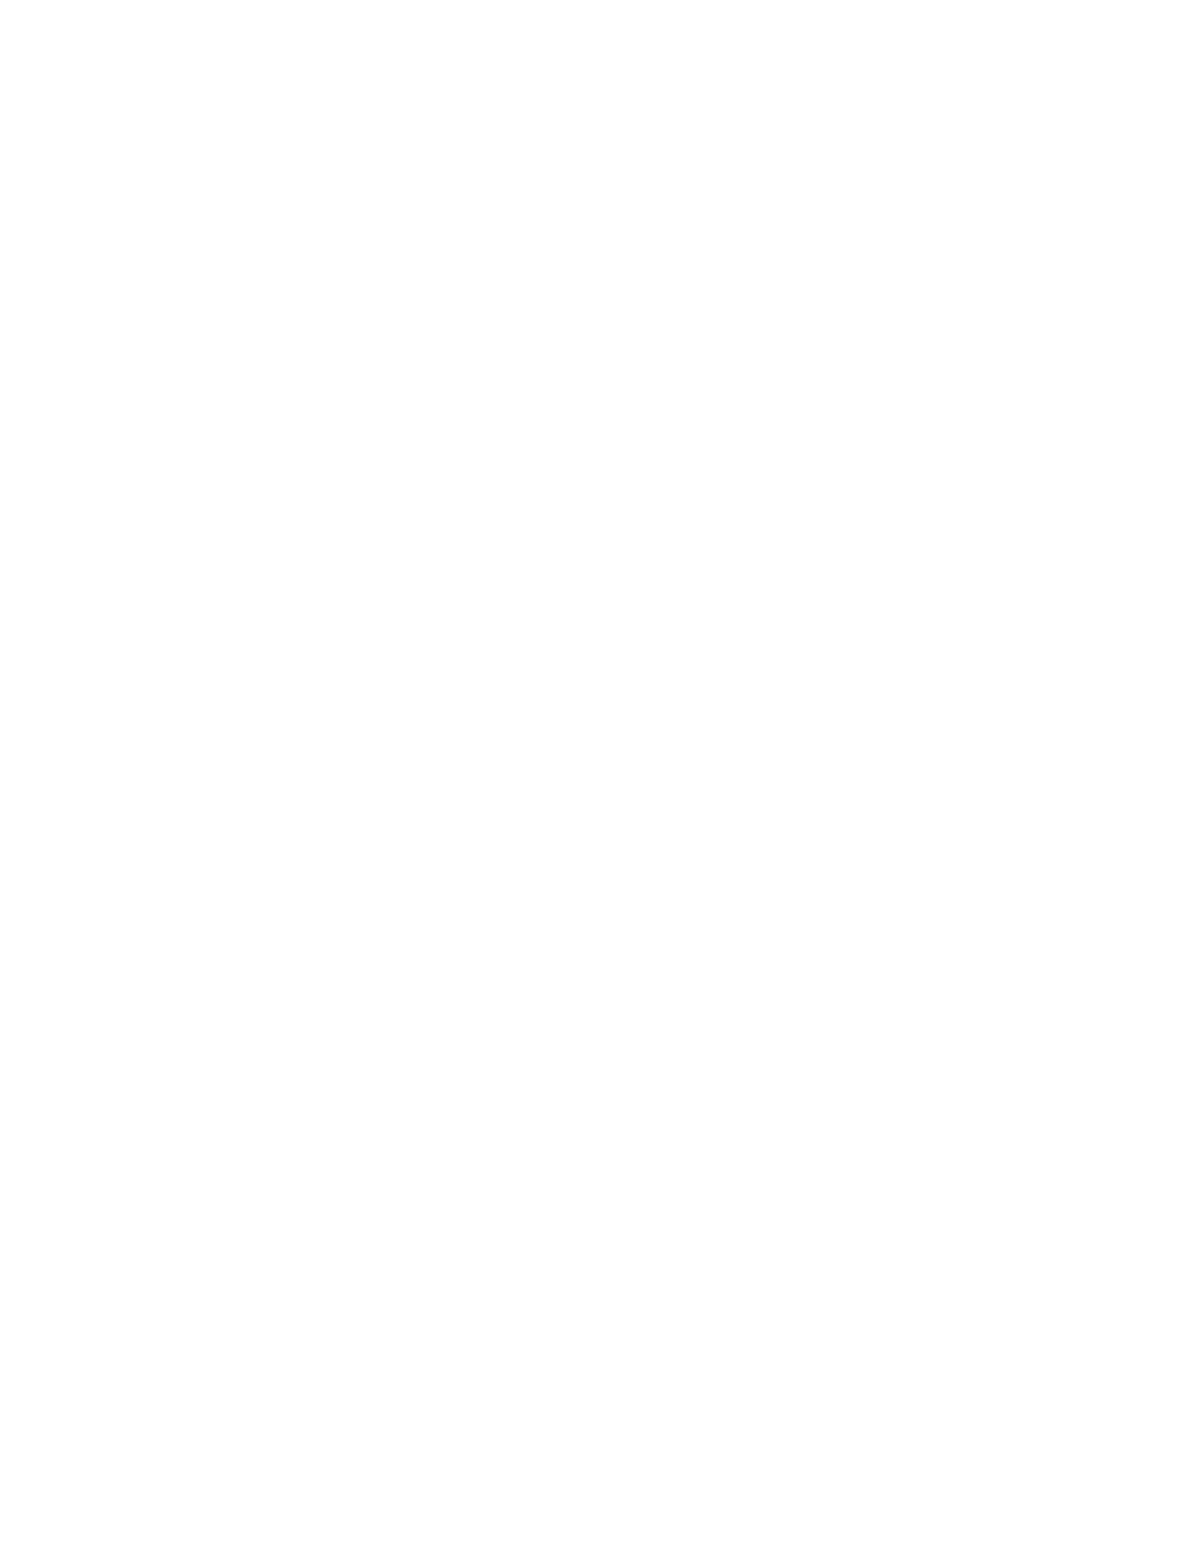 Brambles logo for dark backgrounds (transparent PNG)